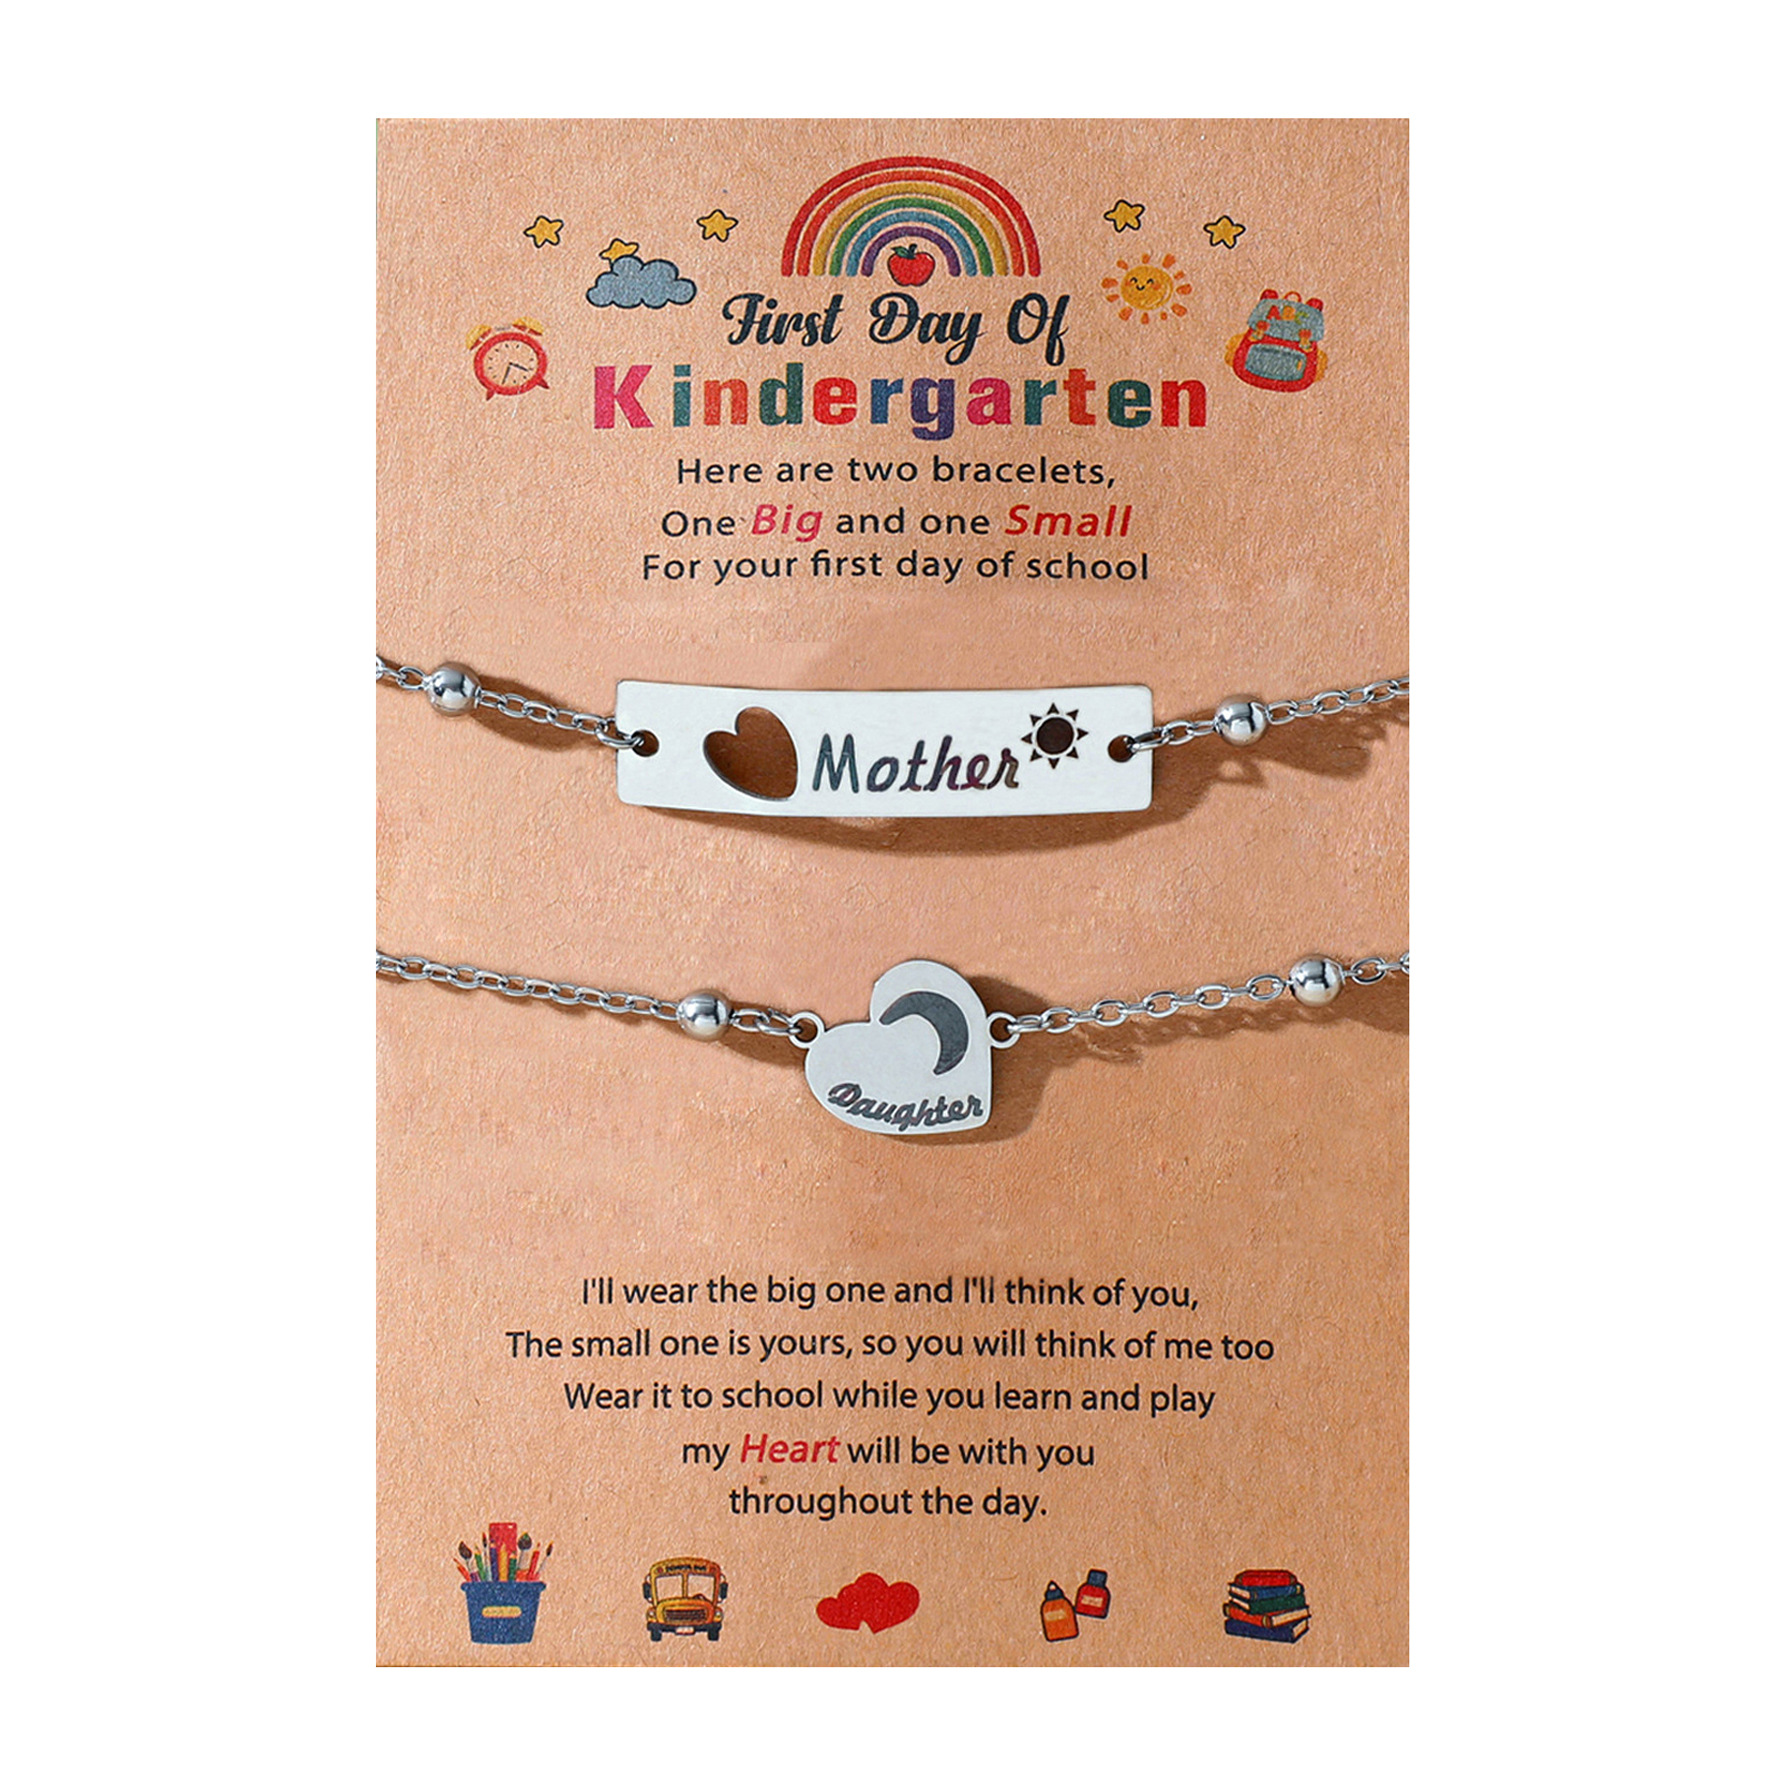 Kindergarten chain model